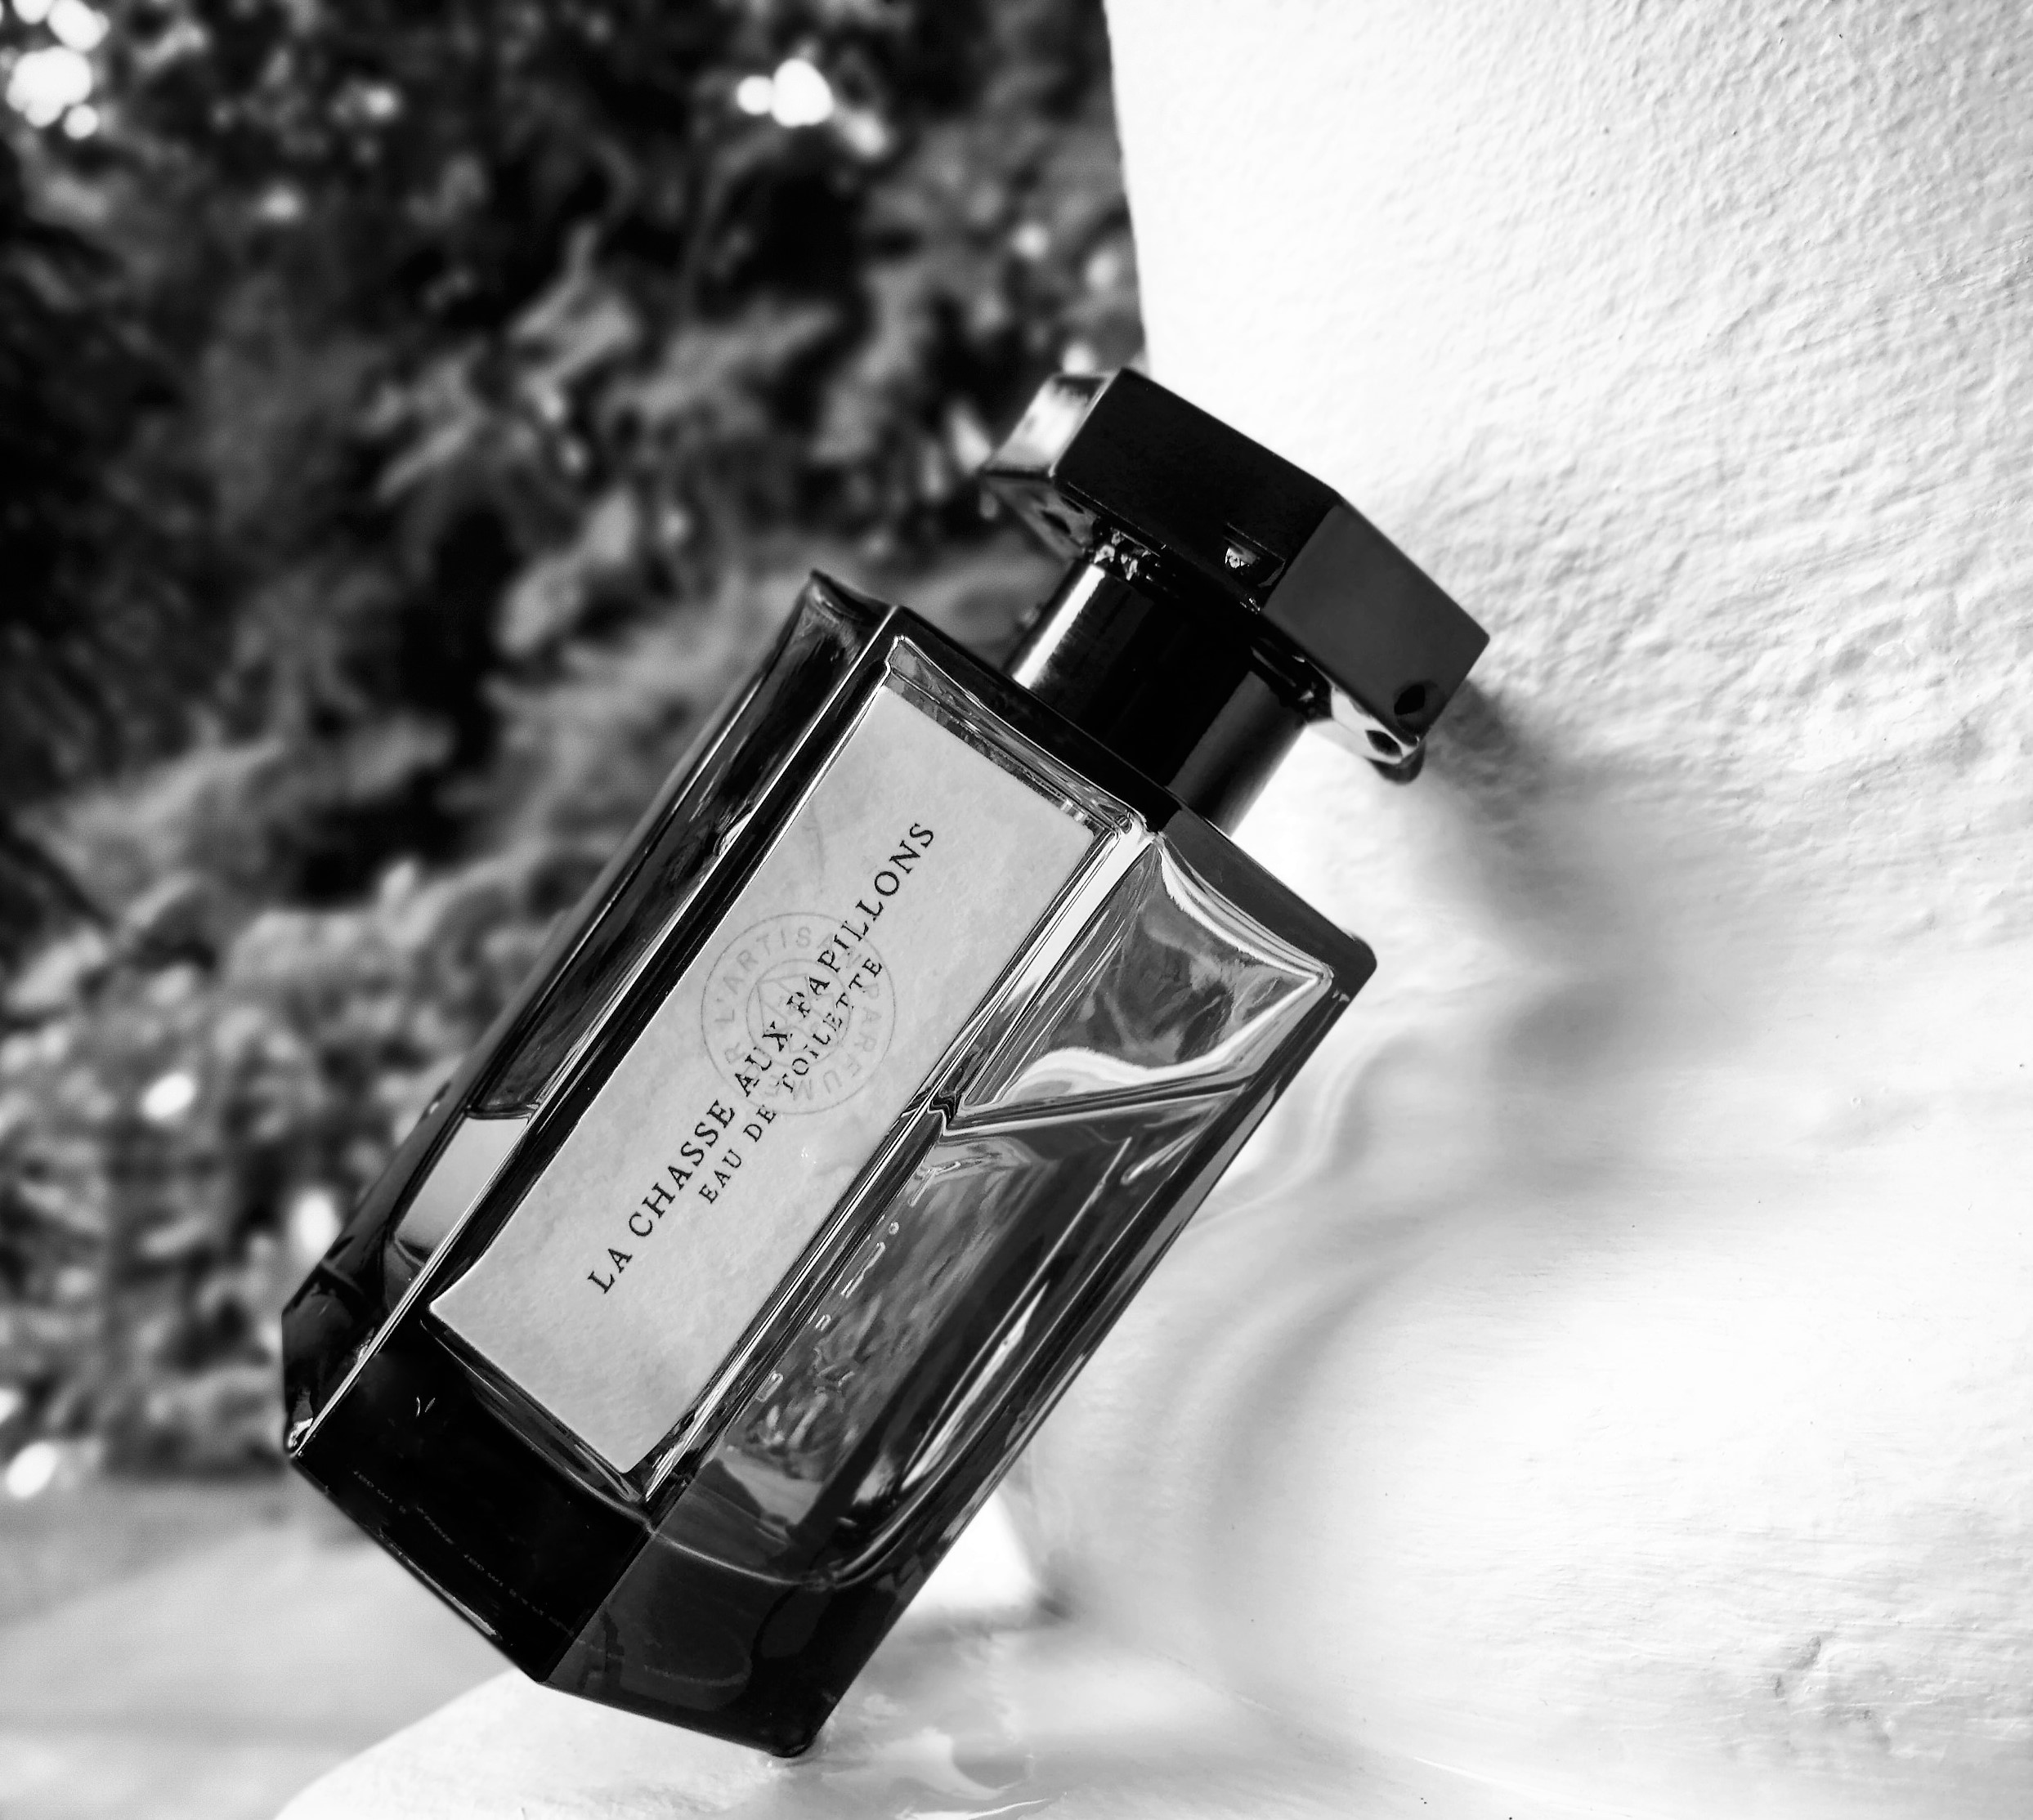 L'Artisan Parfumeur La Chasse aux Papillons Extreme • Tiny Fragrances